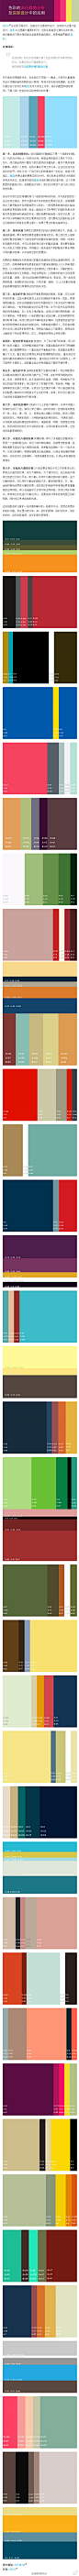 【推荐！色彩的流行趋势分析及实际设计中的应用】@刘义0 在此我们通过设计的对比和配色告诉大家在工作中，色彩的配置和色标使用；下面介绍一些色彩在实际使用中的步骤。全文阅读→http://t.cn/zQGHtF8